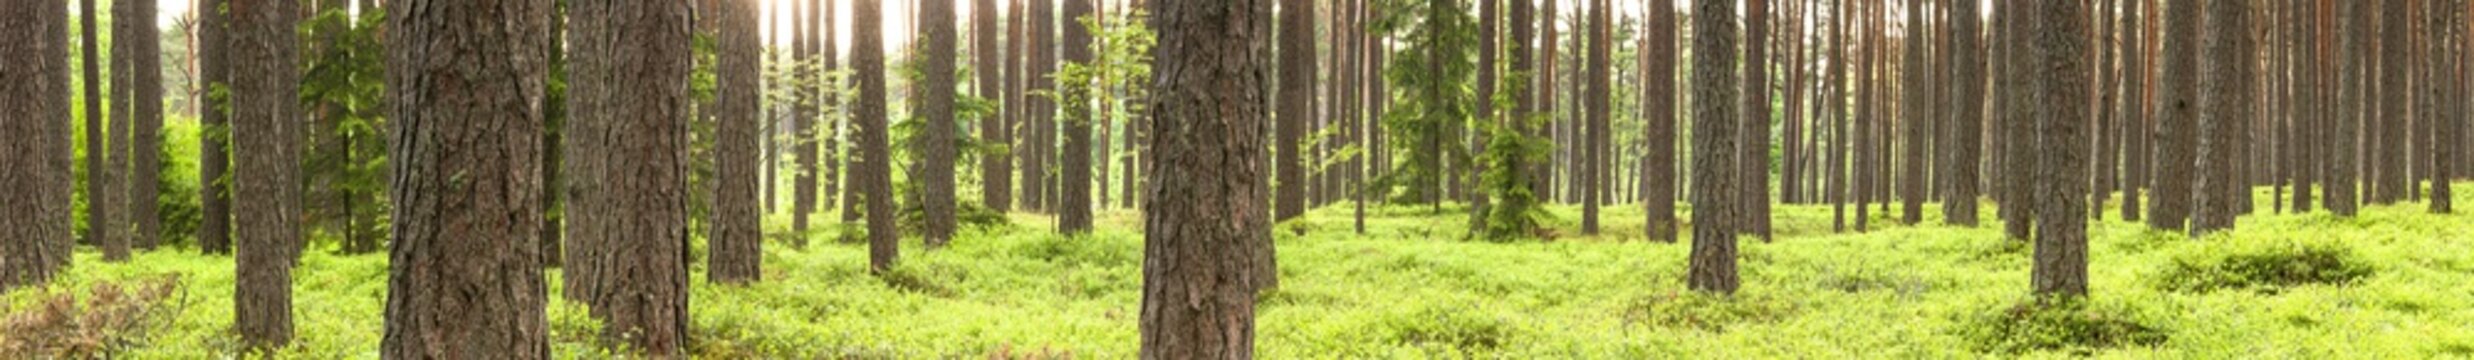 Fototapeta Zielony sosna las w lecie